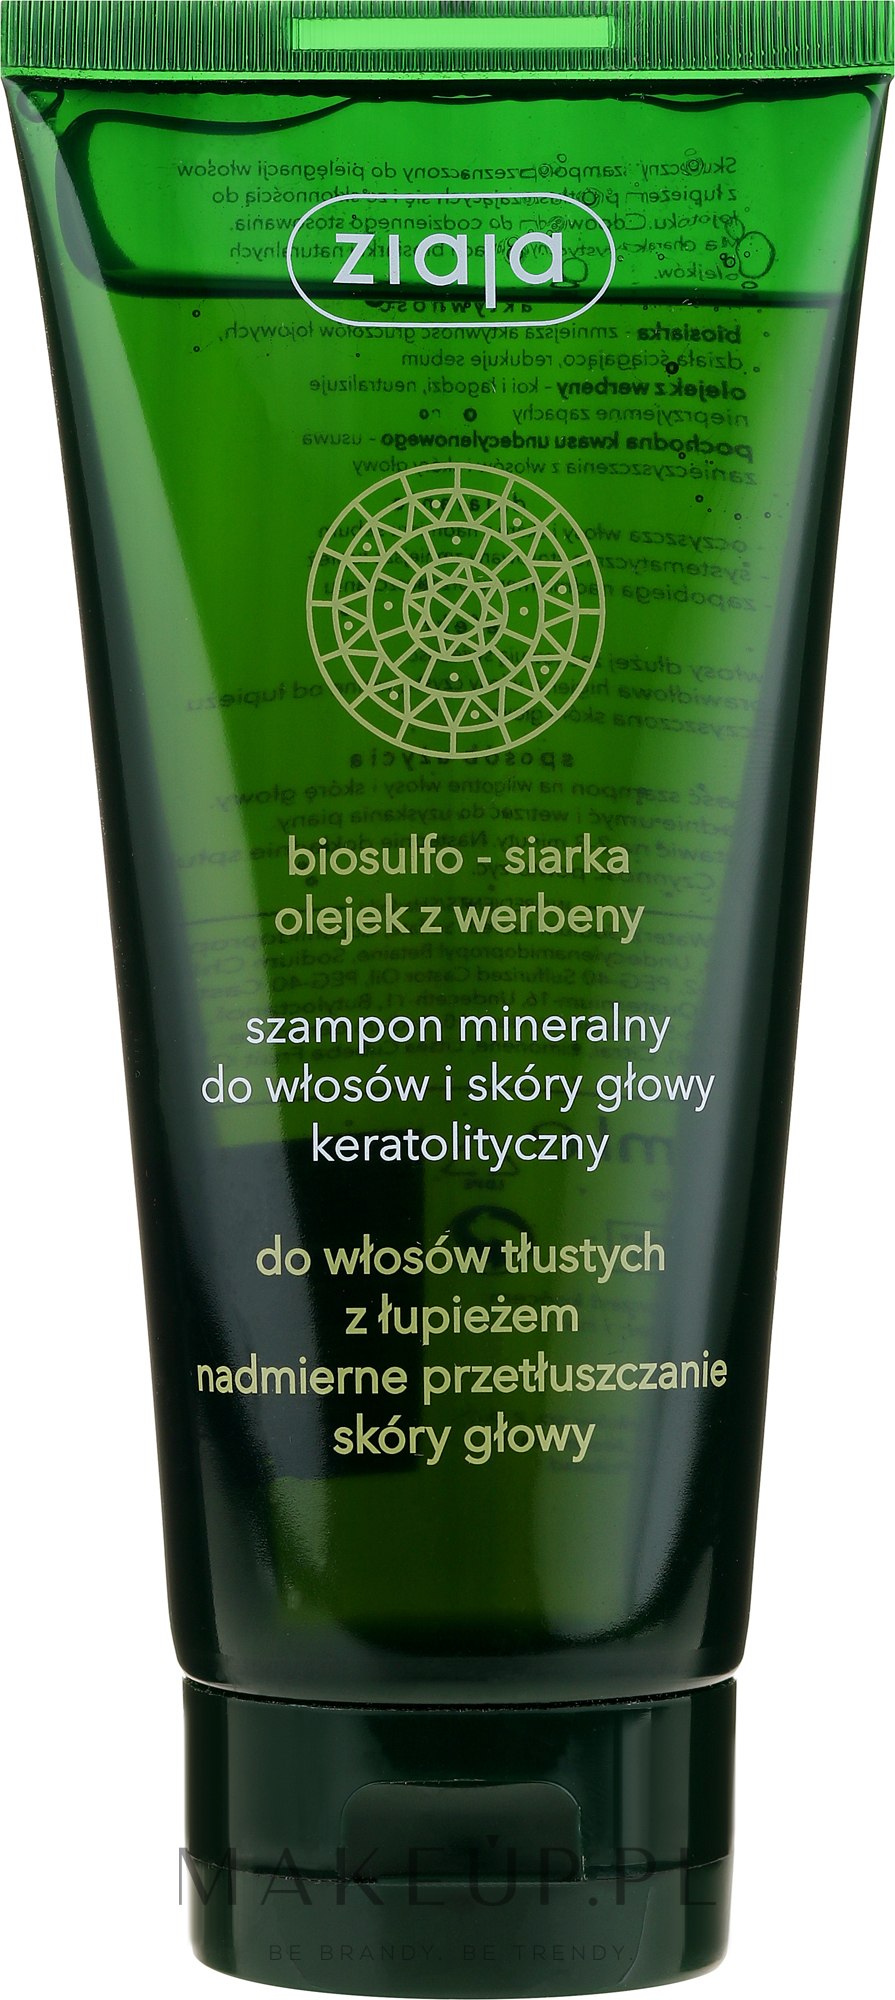 ziaja szampon mineralny do włosów i skóry głowy keratolityczny